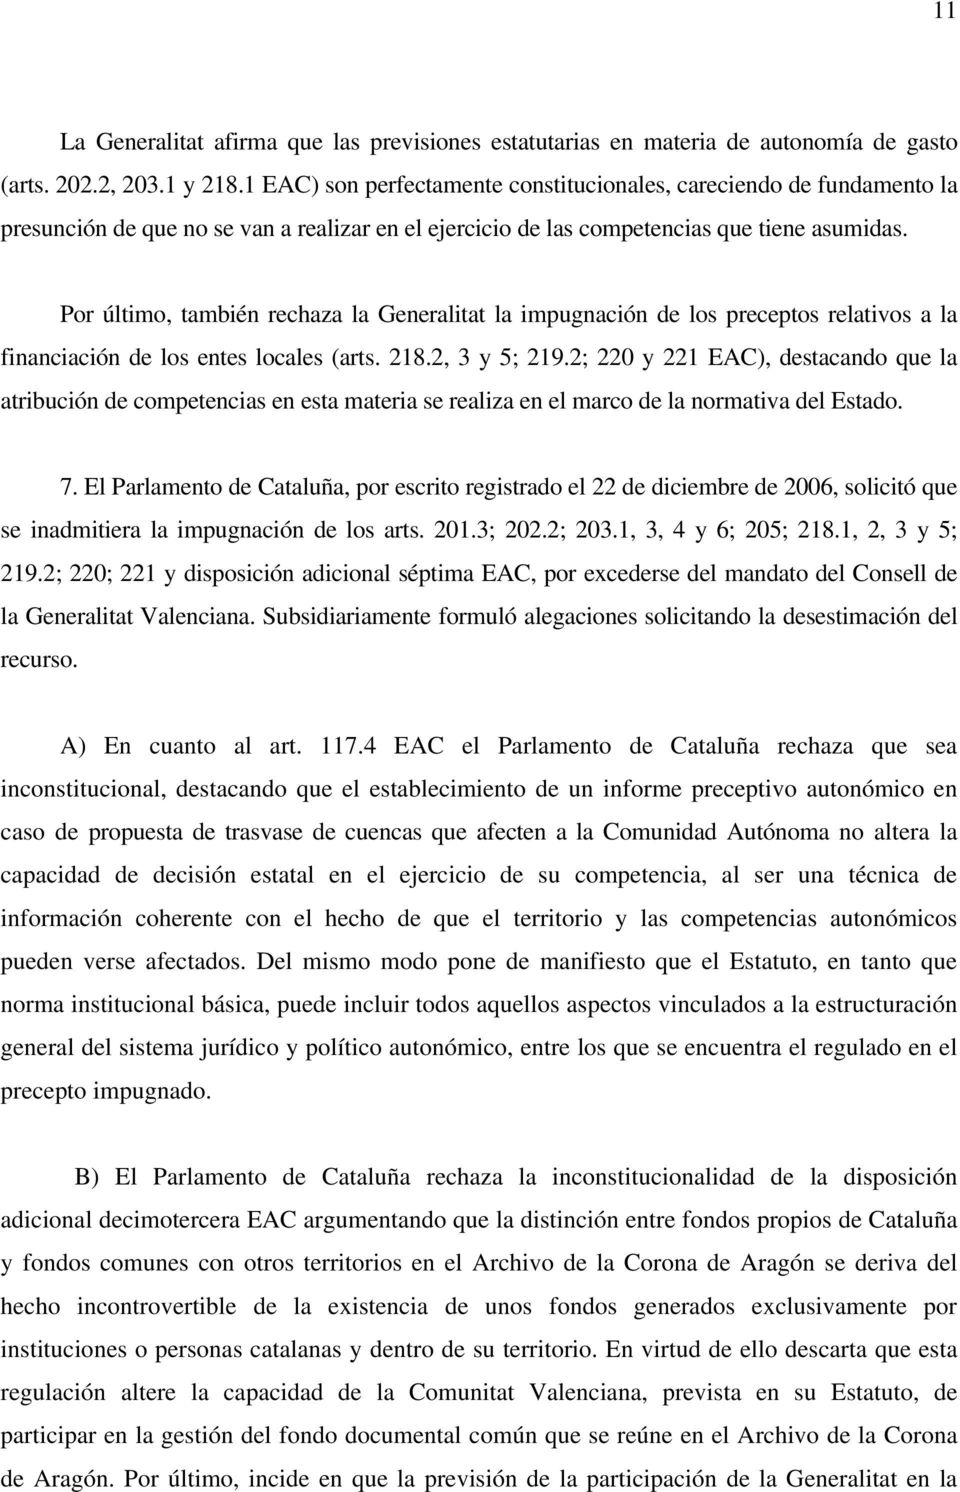 Por último, también rechaza la Generalitat la impugnación de los preceptos relativos a la financiación de los entes locales (arts. 218.2, 3 y 5; 219.